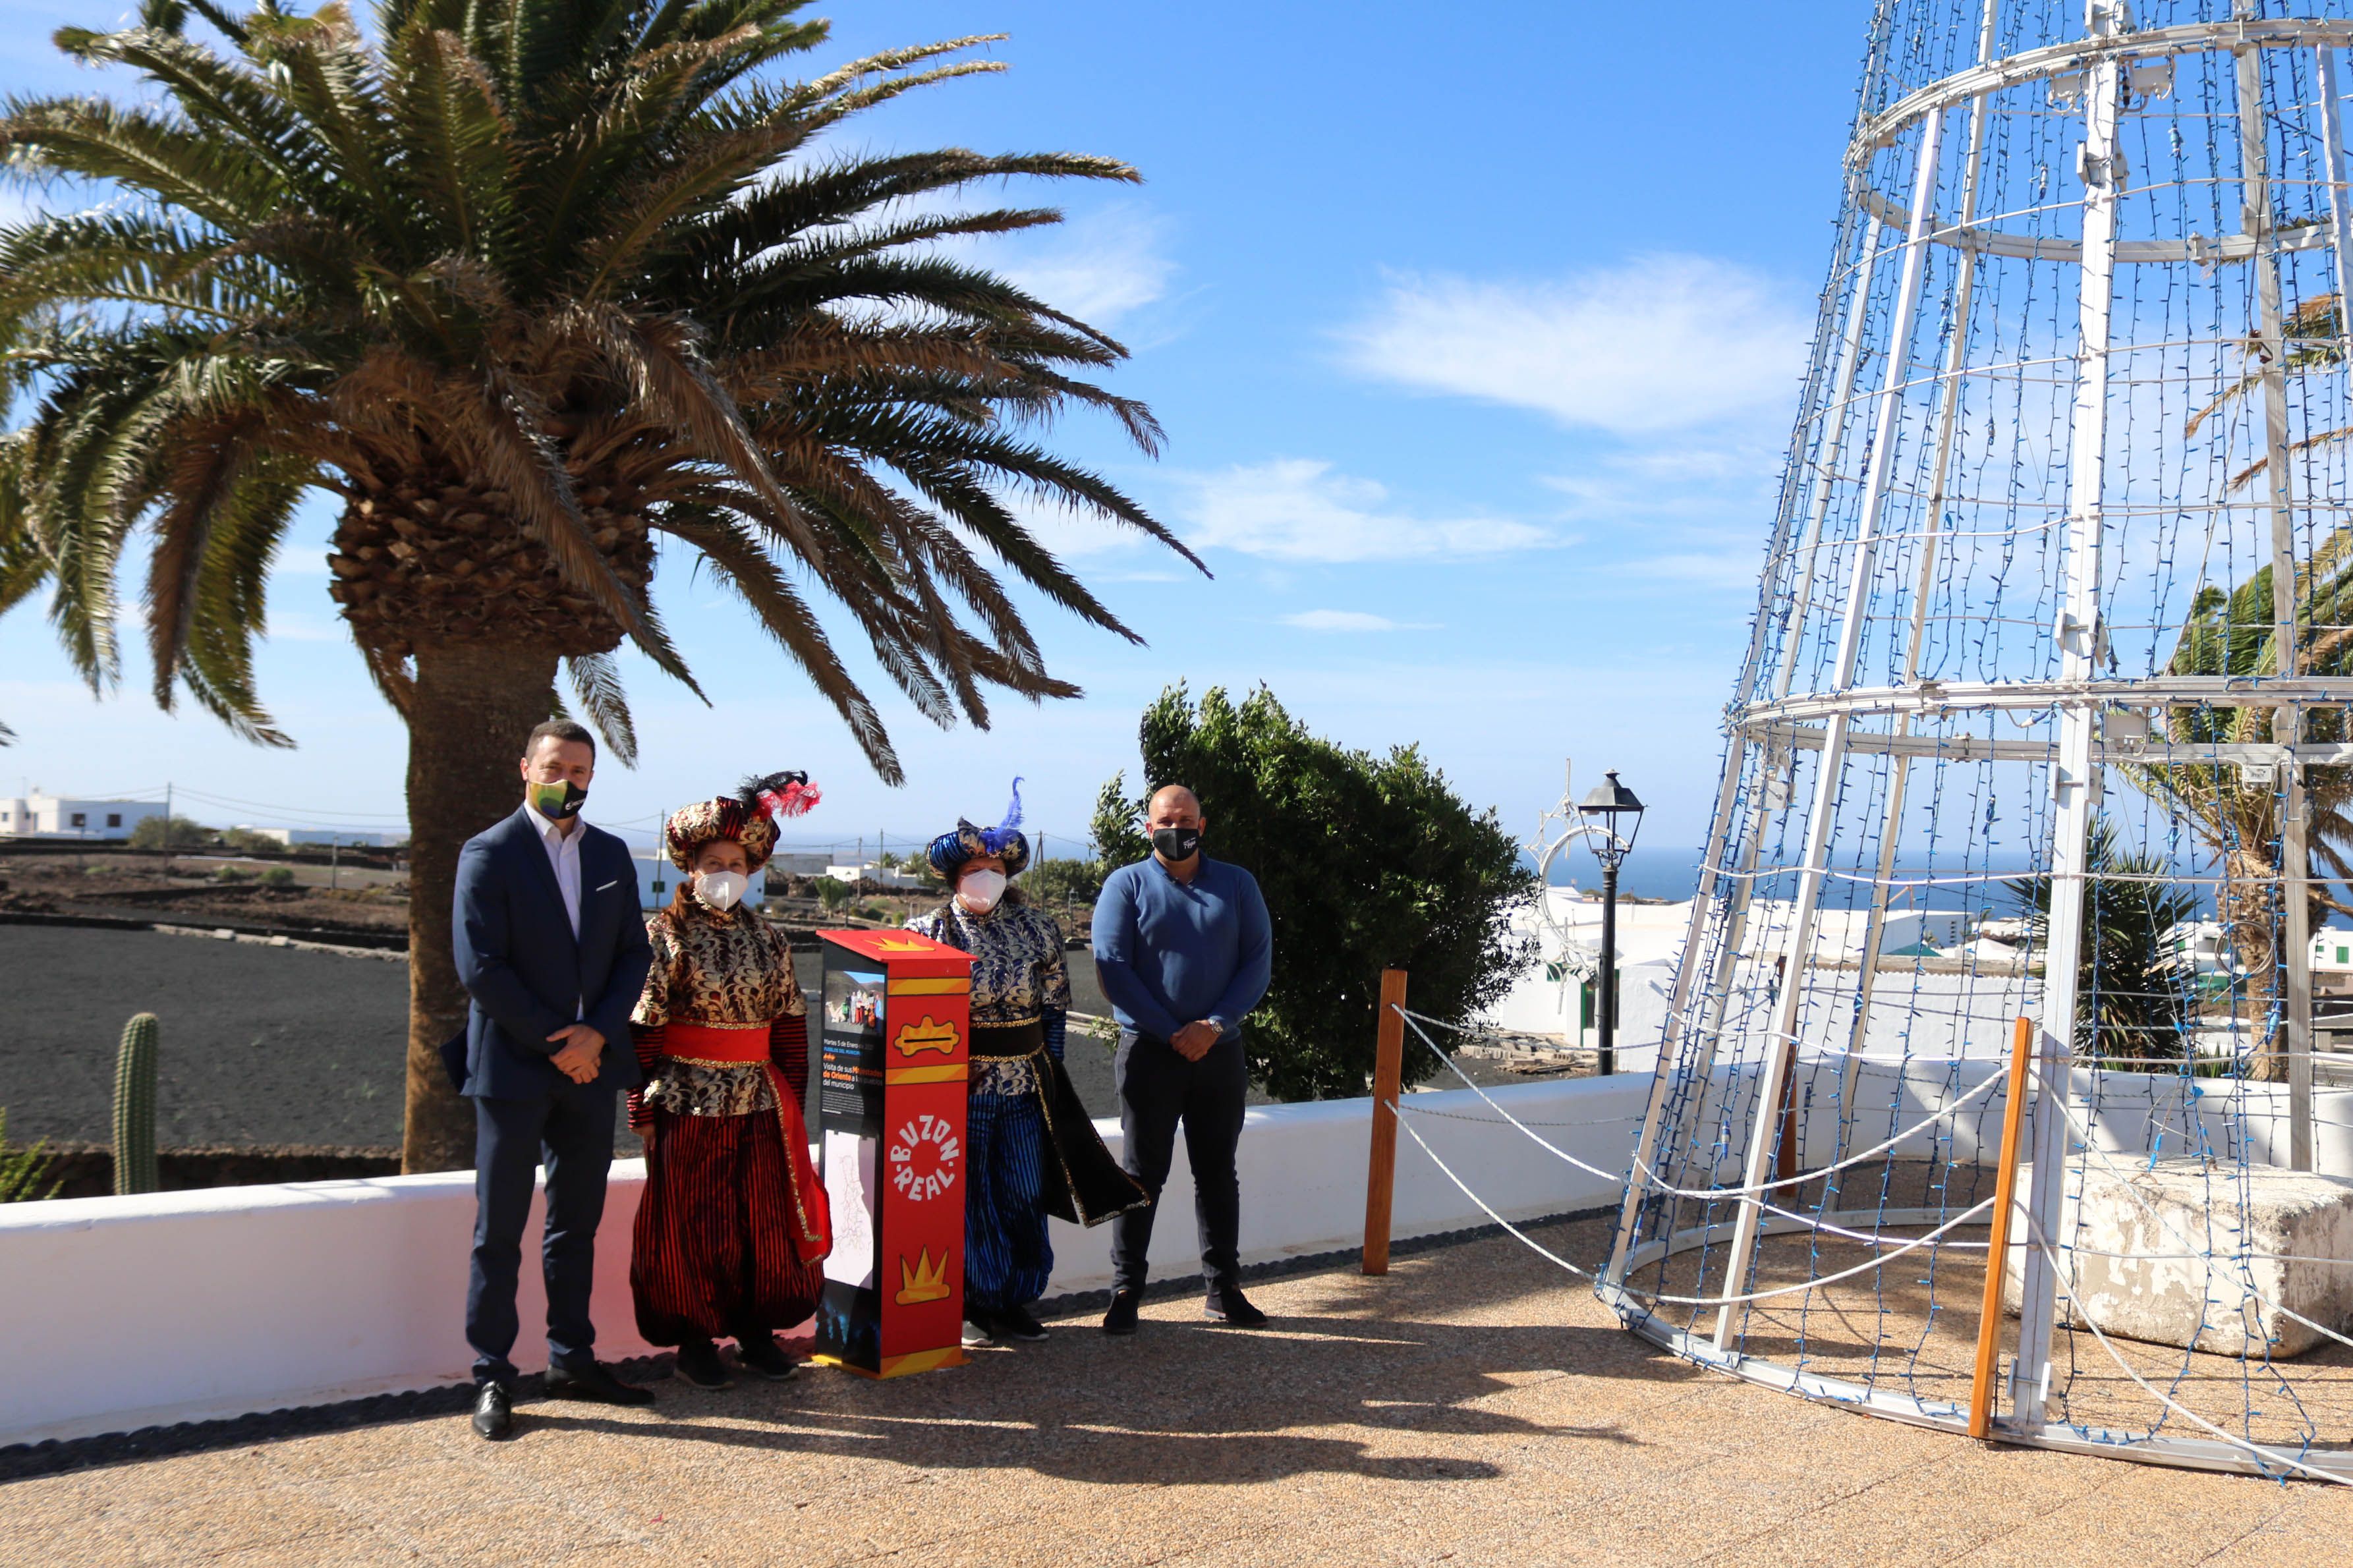 El alcalde, Óscar Noda, y Javier Camacho, edil de Festejos del Ayuntamiento de Yaiza  junto a los pajes reales en Las Breñas